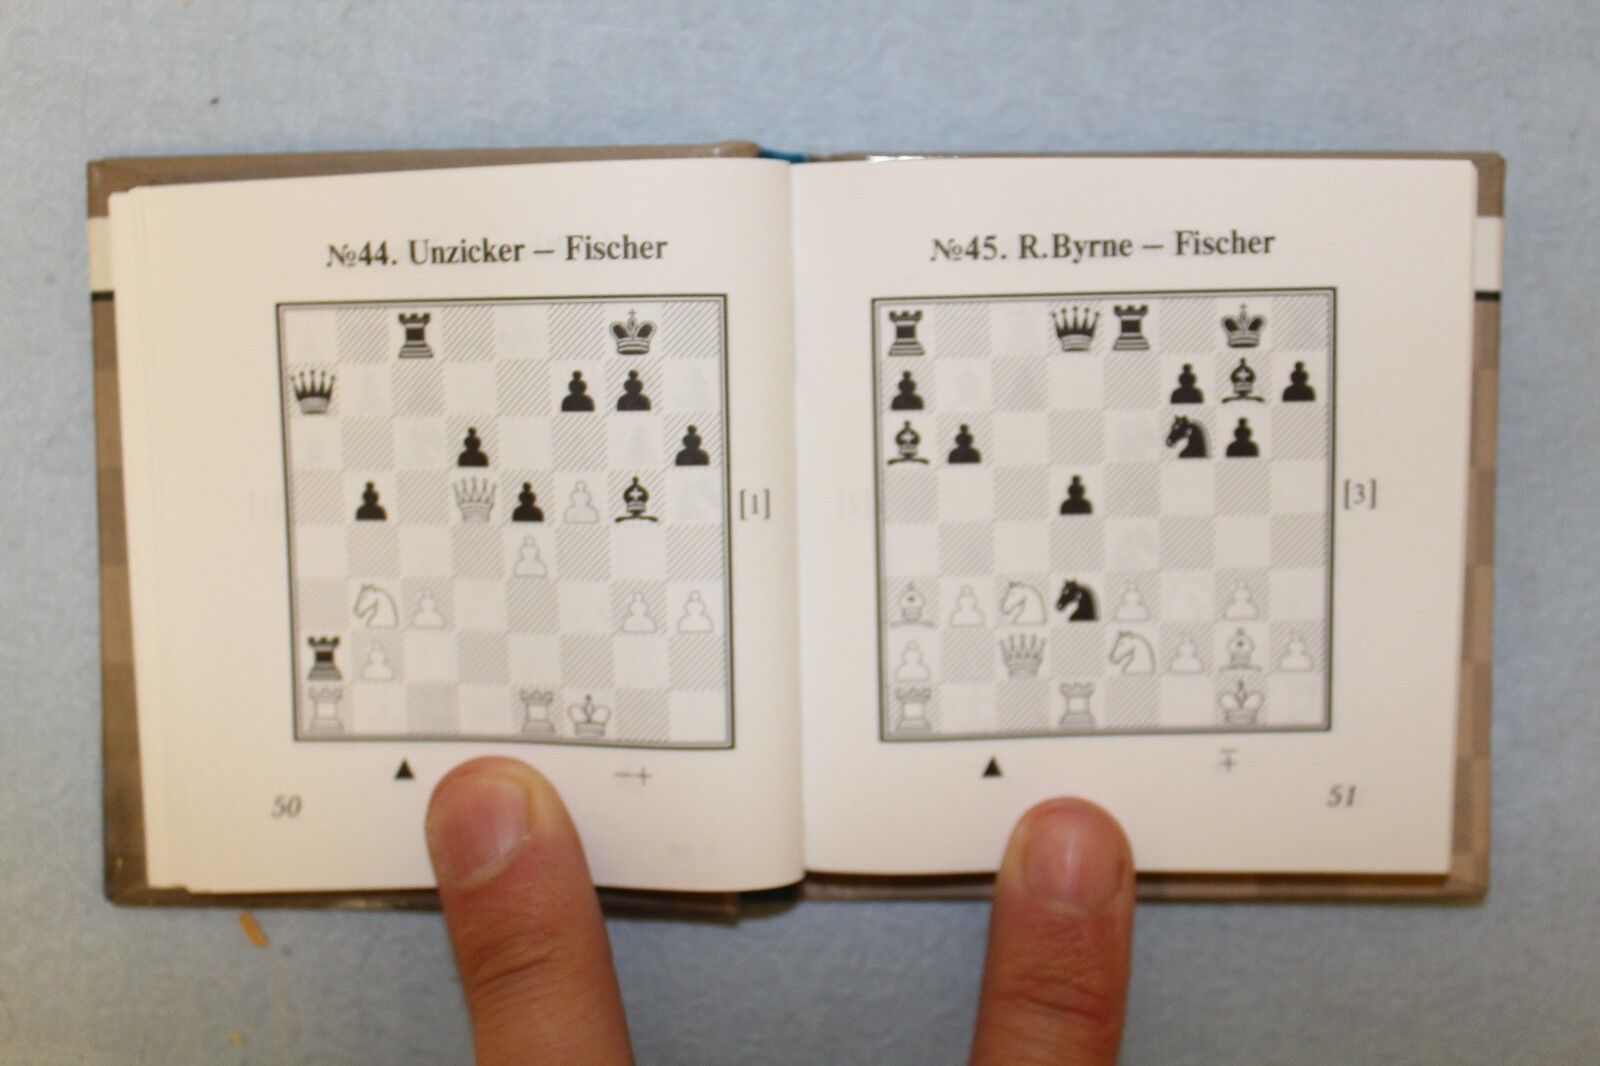 11168.Chess Minibook: A.Kalinin. Robert Fischer. Great Chess Combinations. 2013